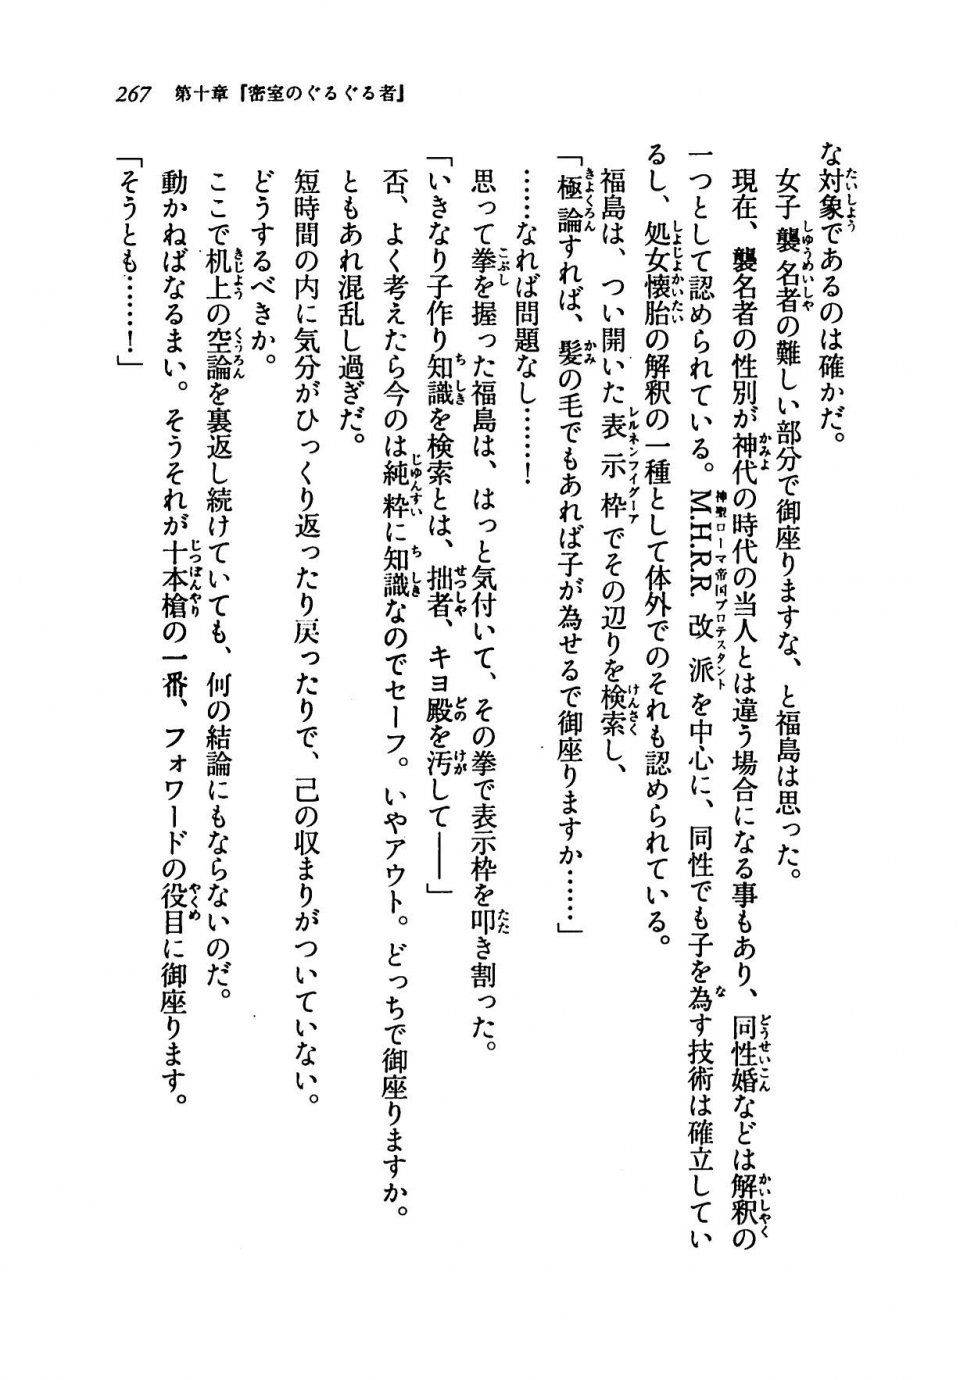 Kyoukai Senjou no Horizon LN Vol 19(8A) - Photo #267